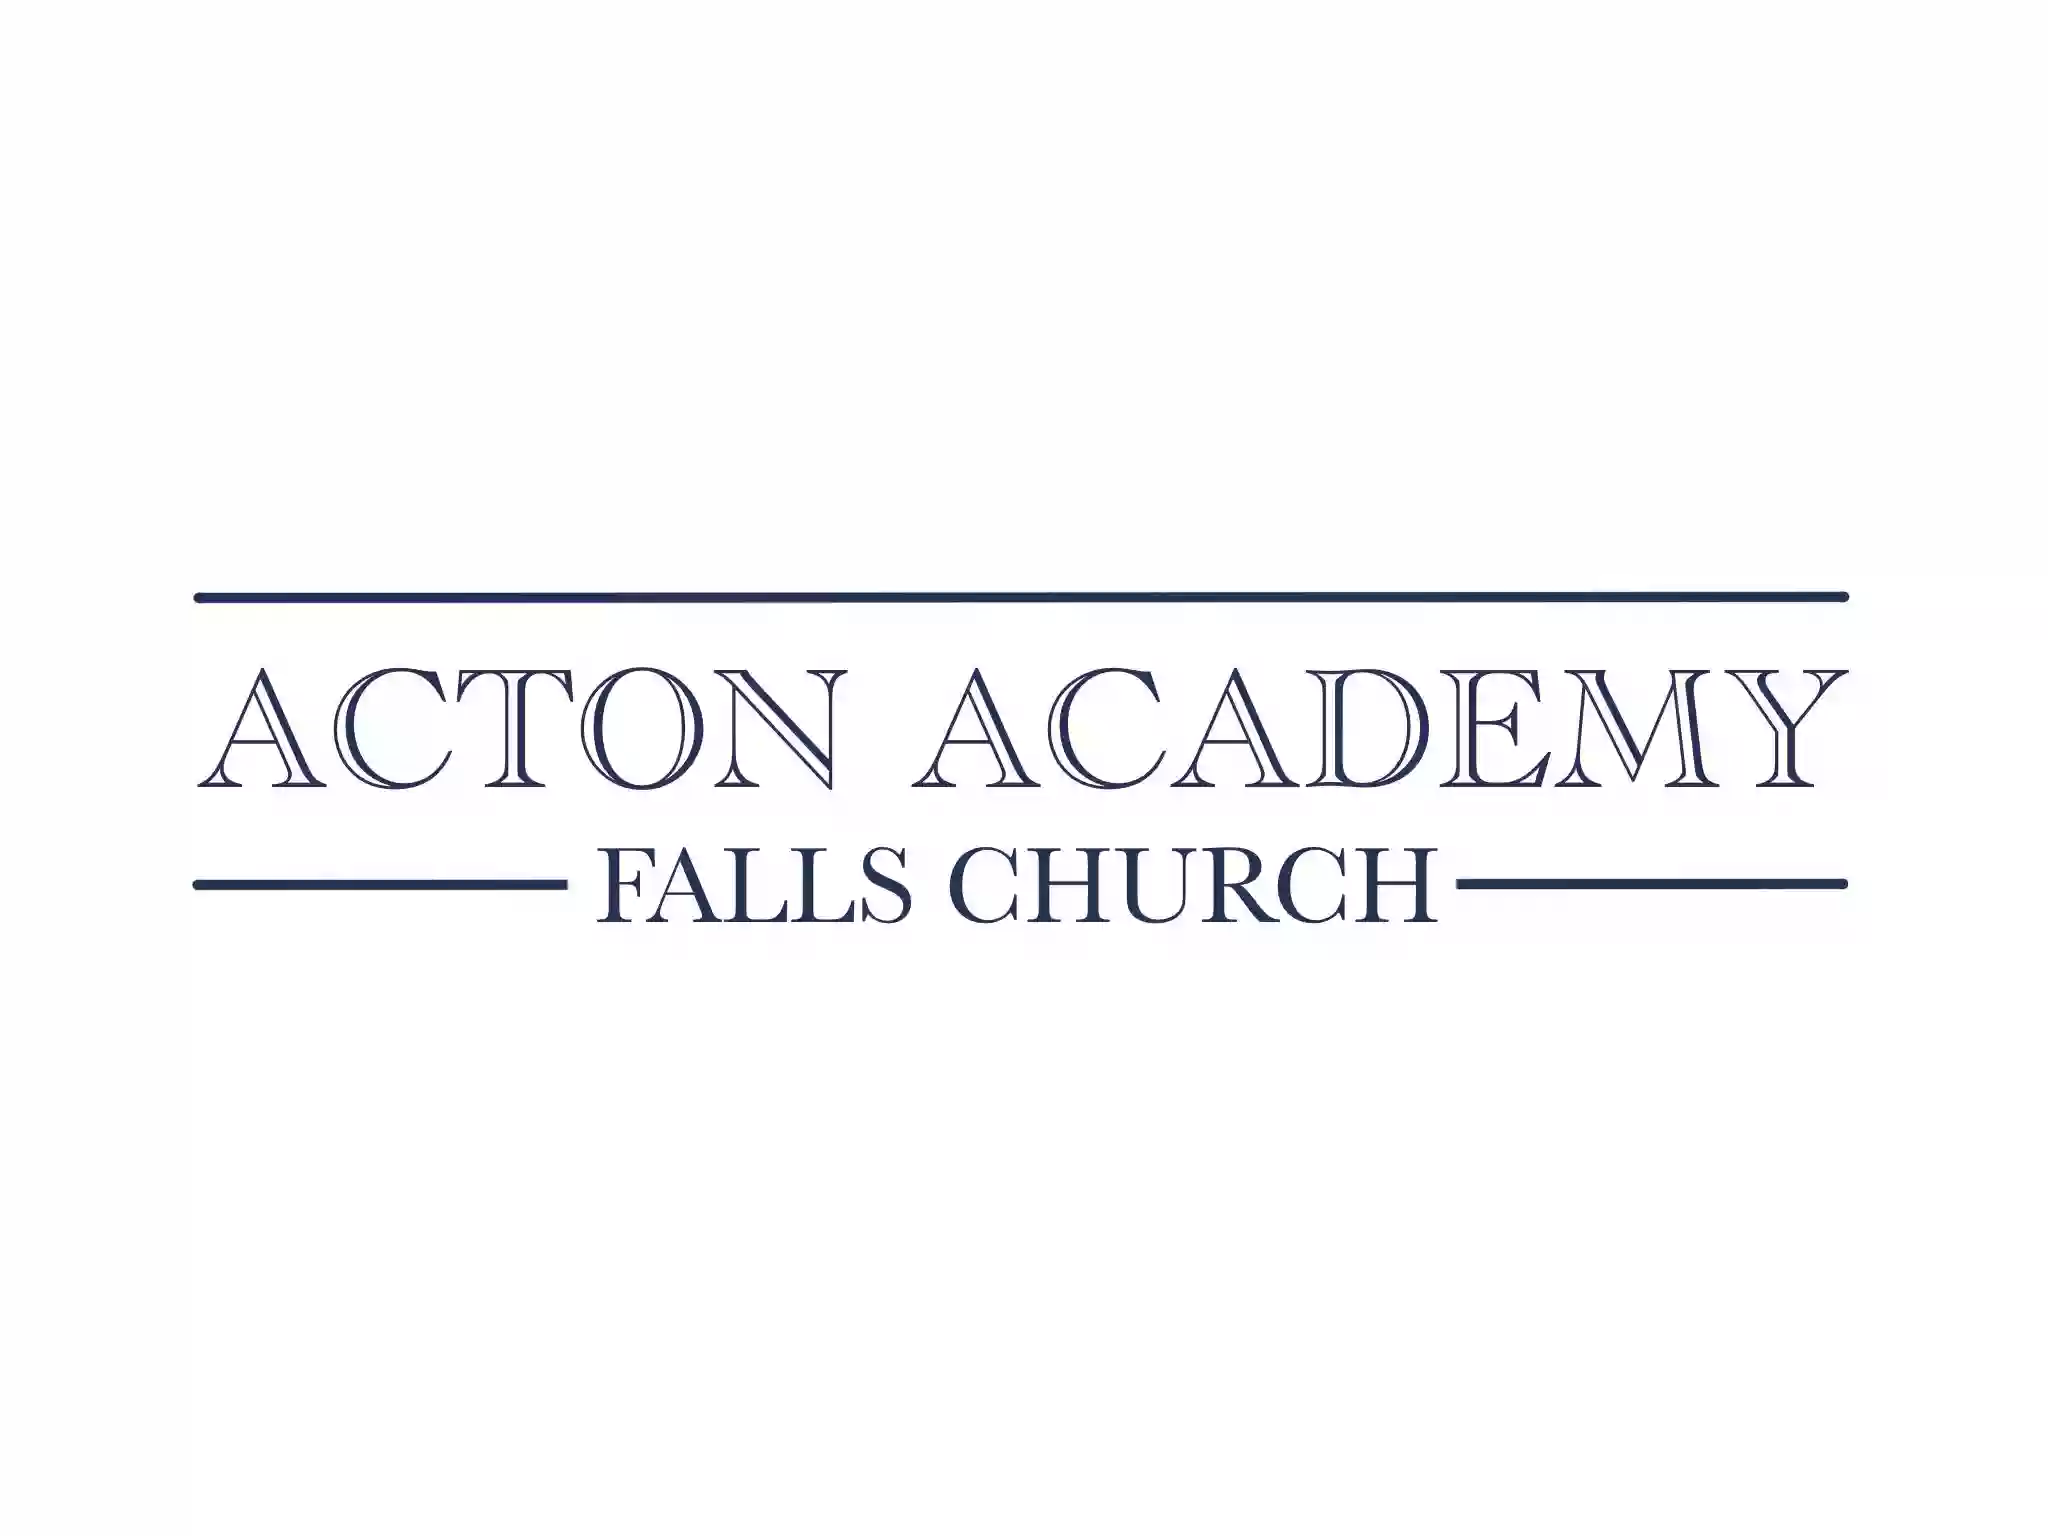 Acton Academy Falls Church